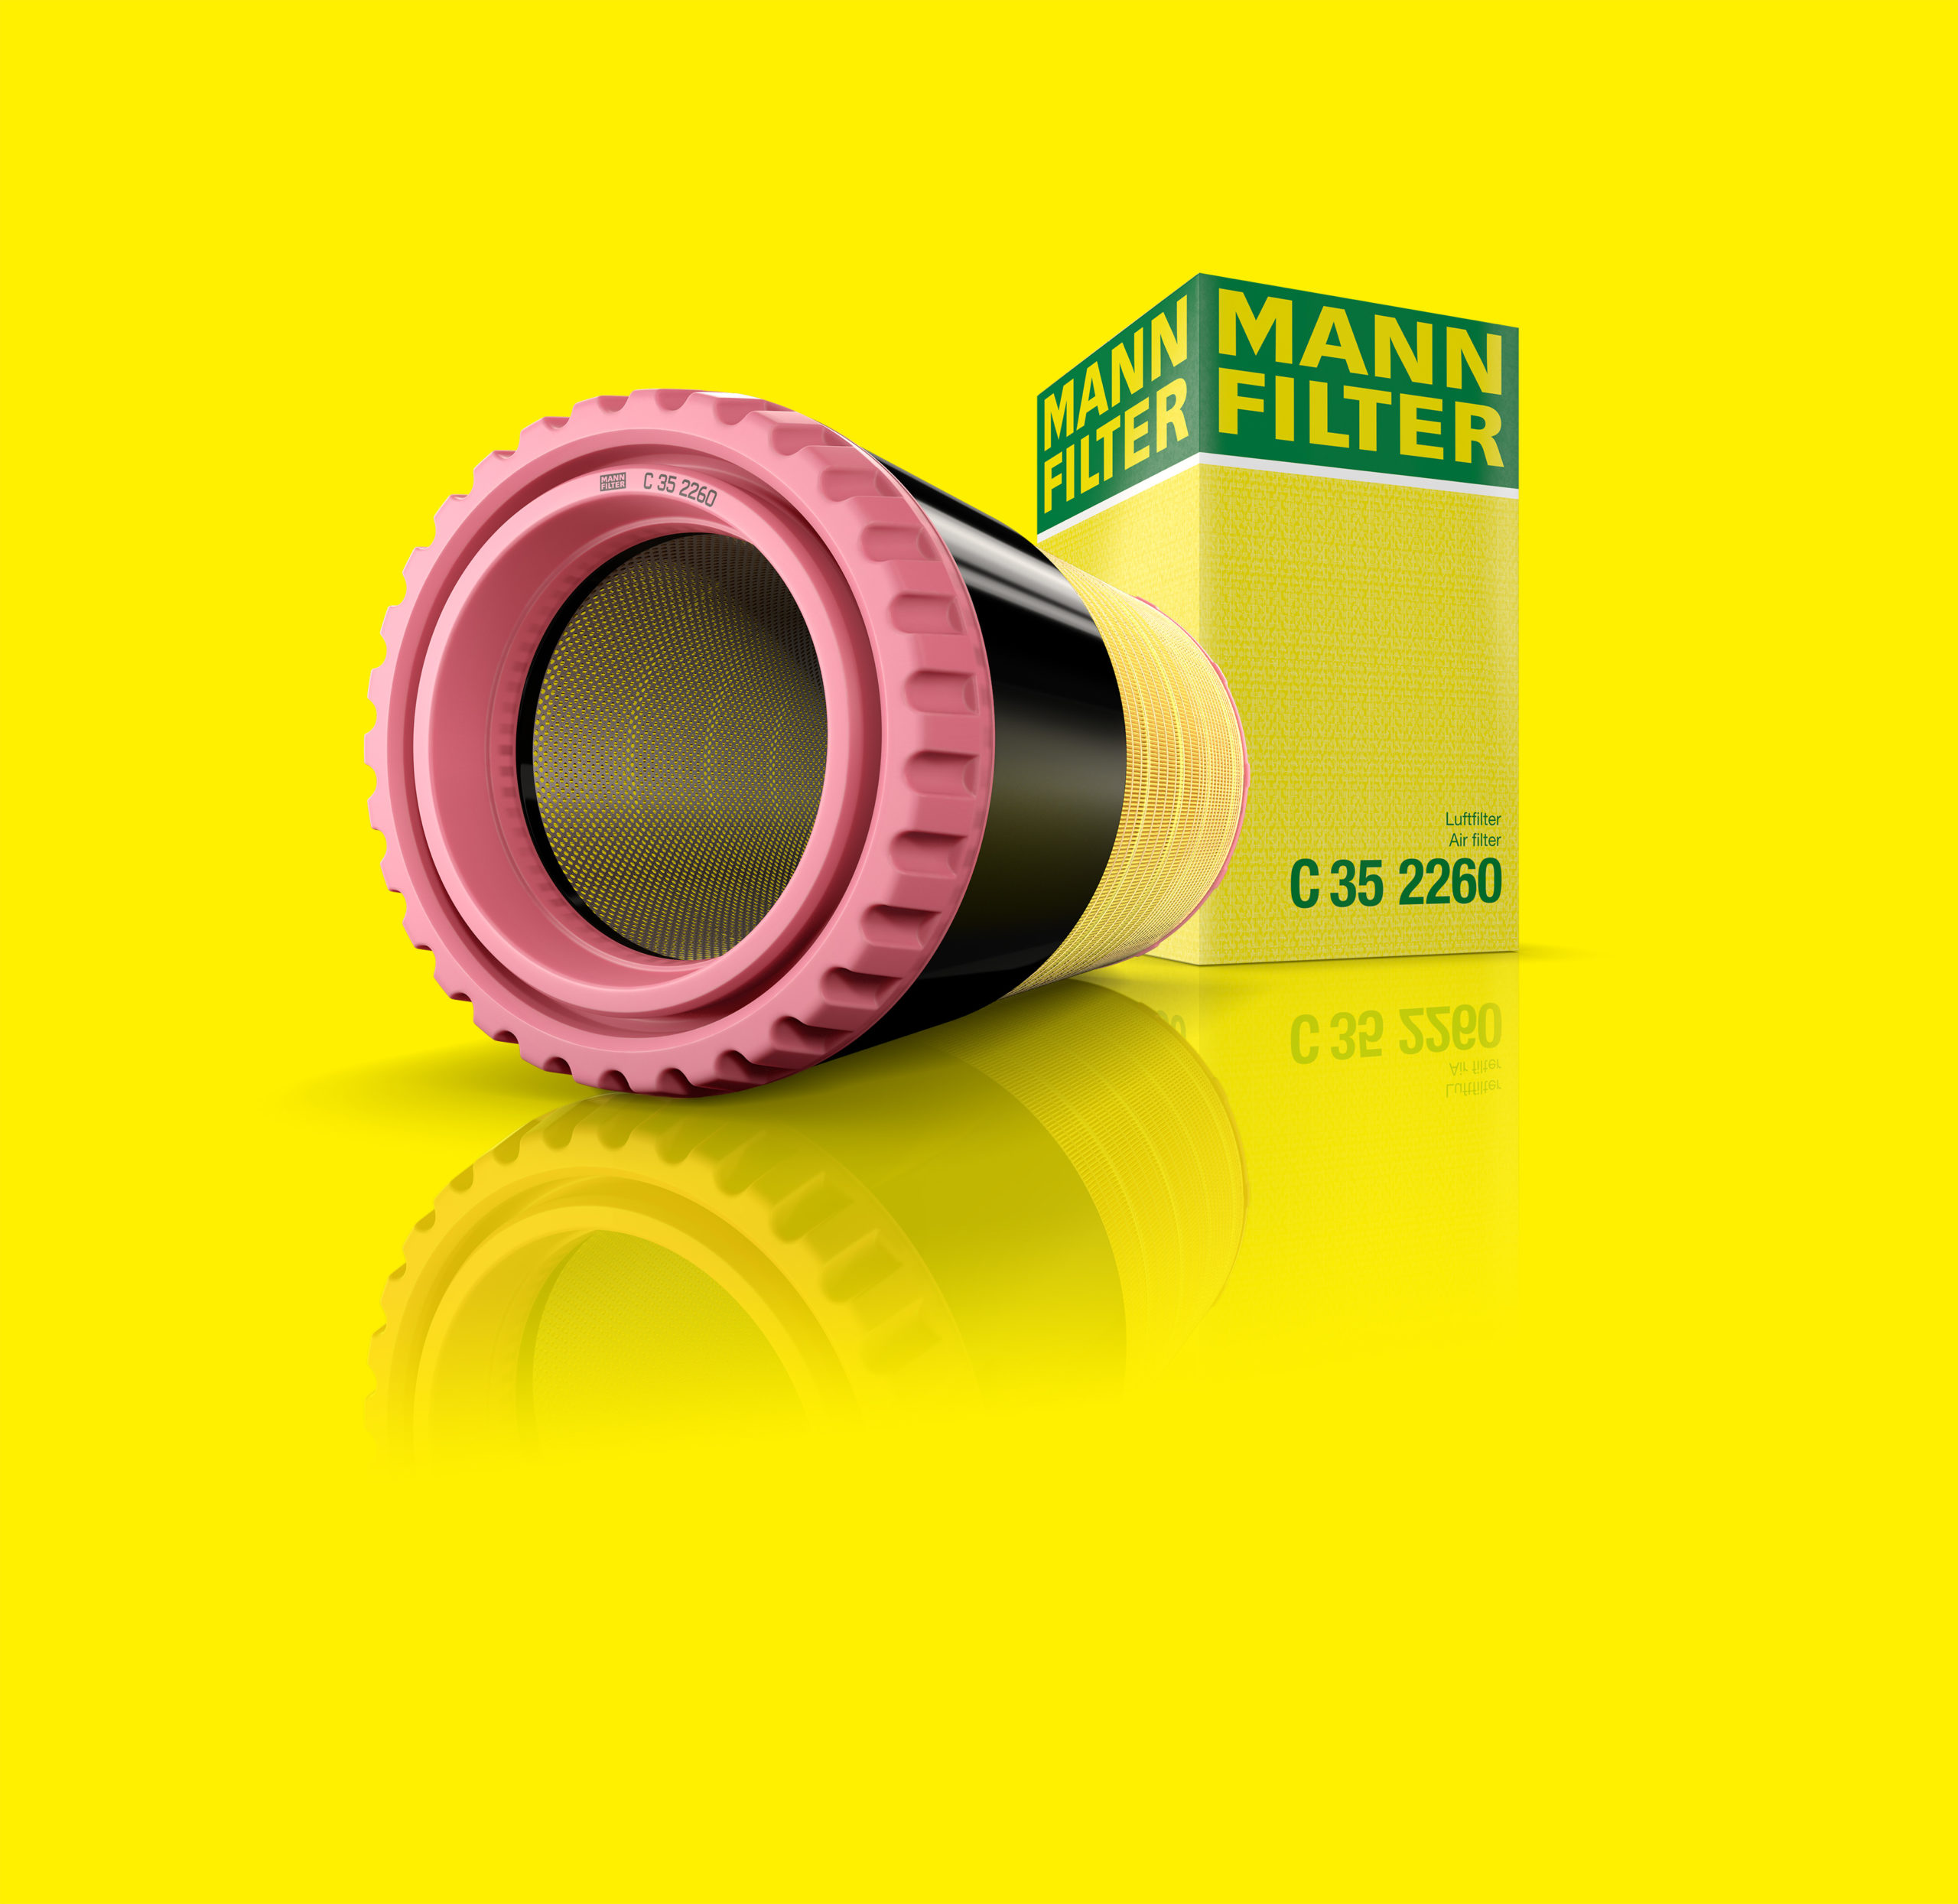 Ein länglicher Filter mit rosa und schwarzen Akkzent vor gelben Hintergrund und spiegelnder Boden neben der Verpackung